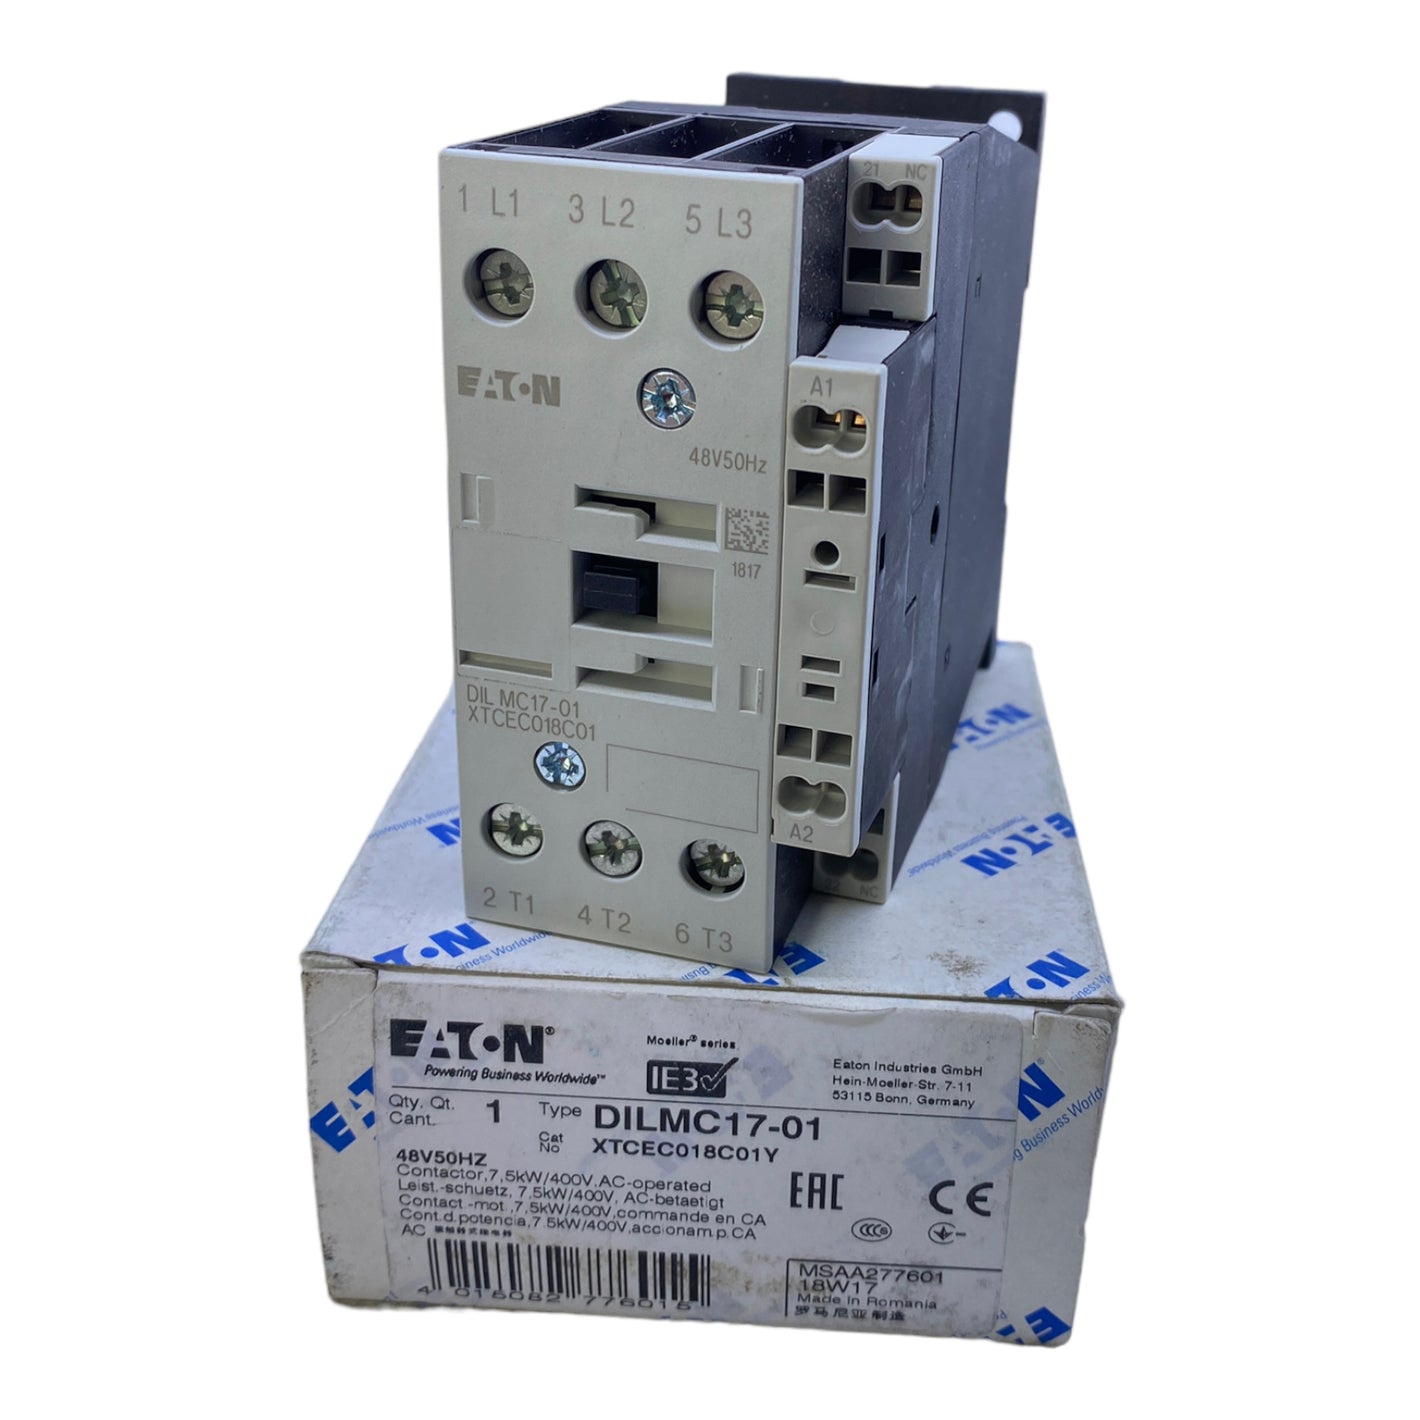 EATON DILMC17-01 power contactor 48V 50Hz 7.5kW 400V AC 